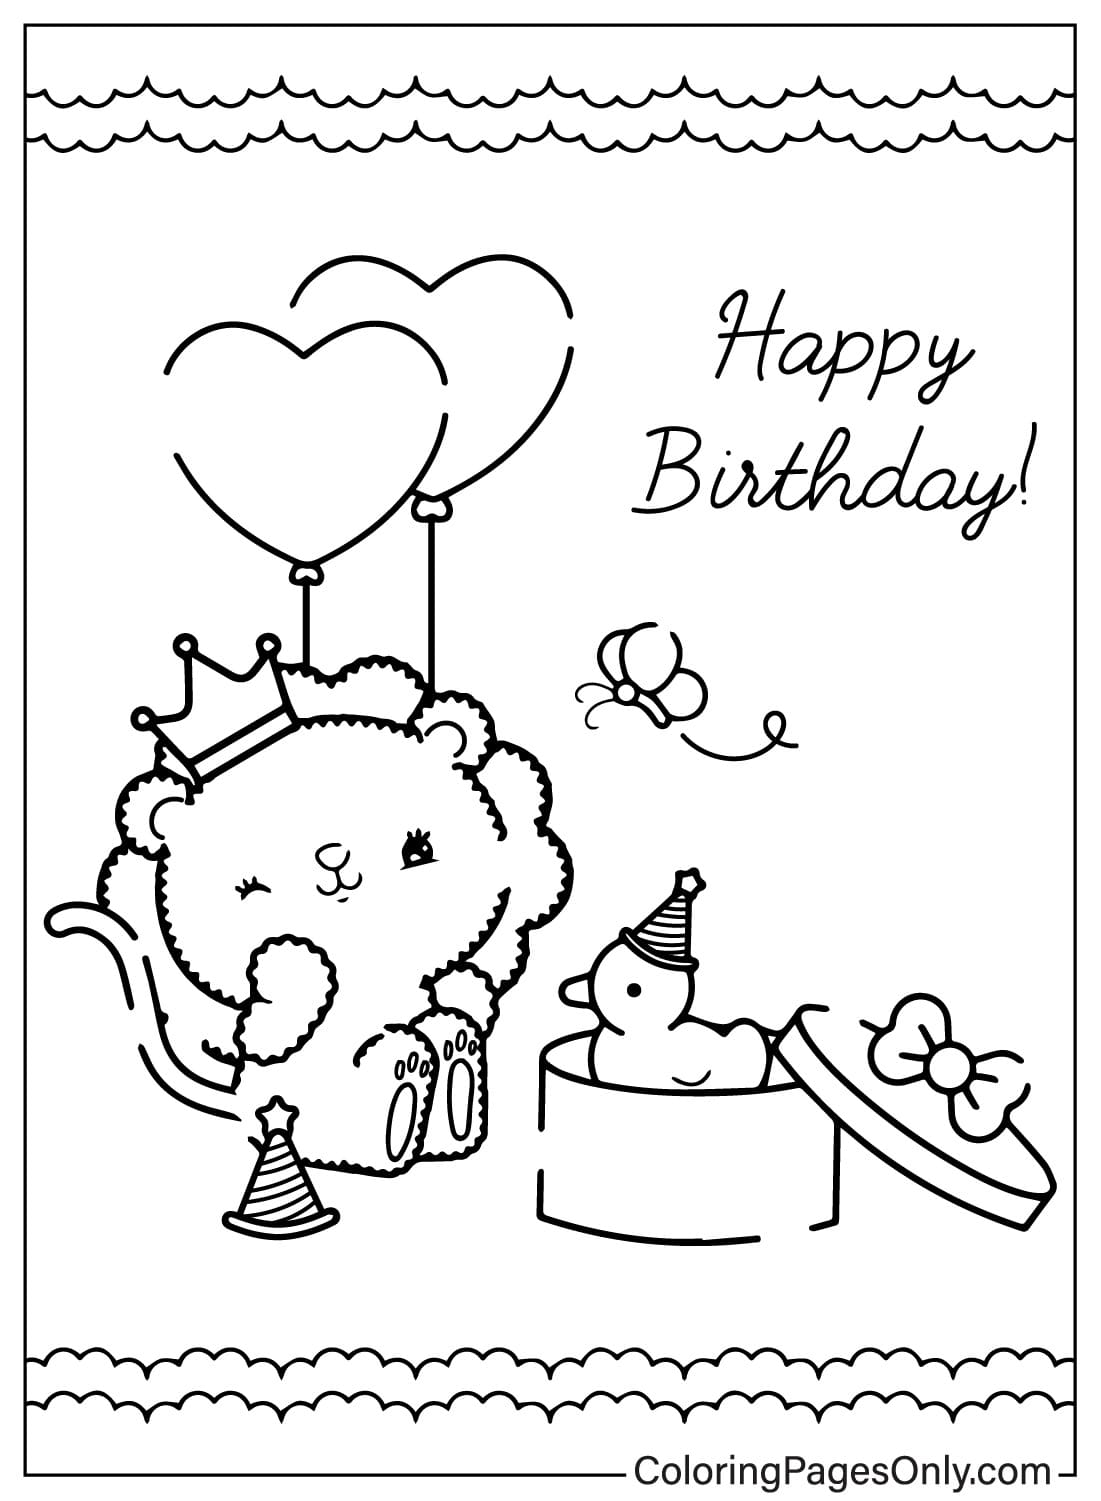 生日快乐卡着色页可从生日快乐卡免费打印